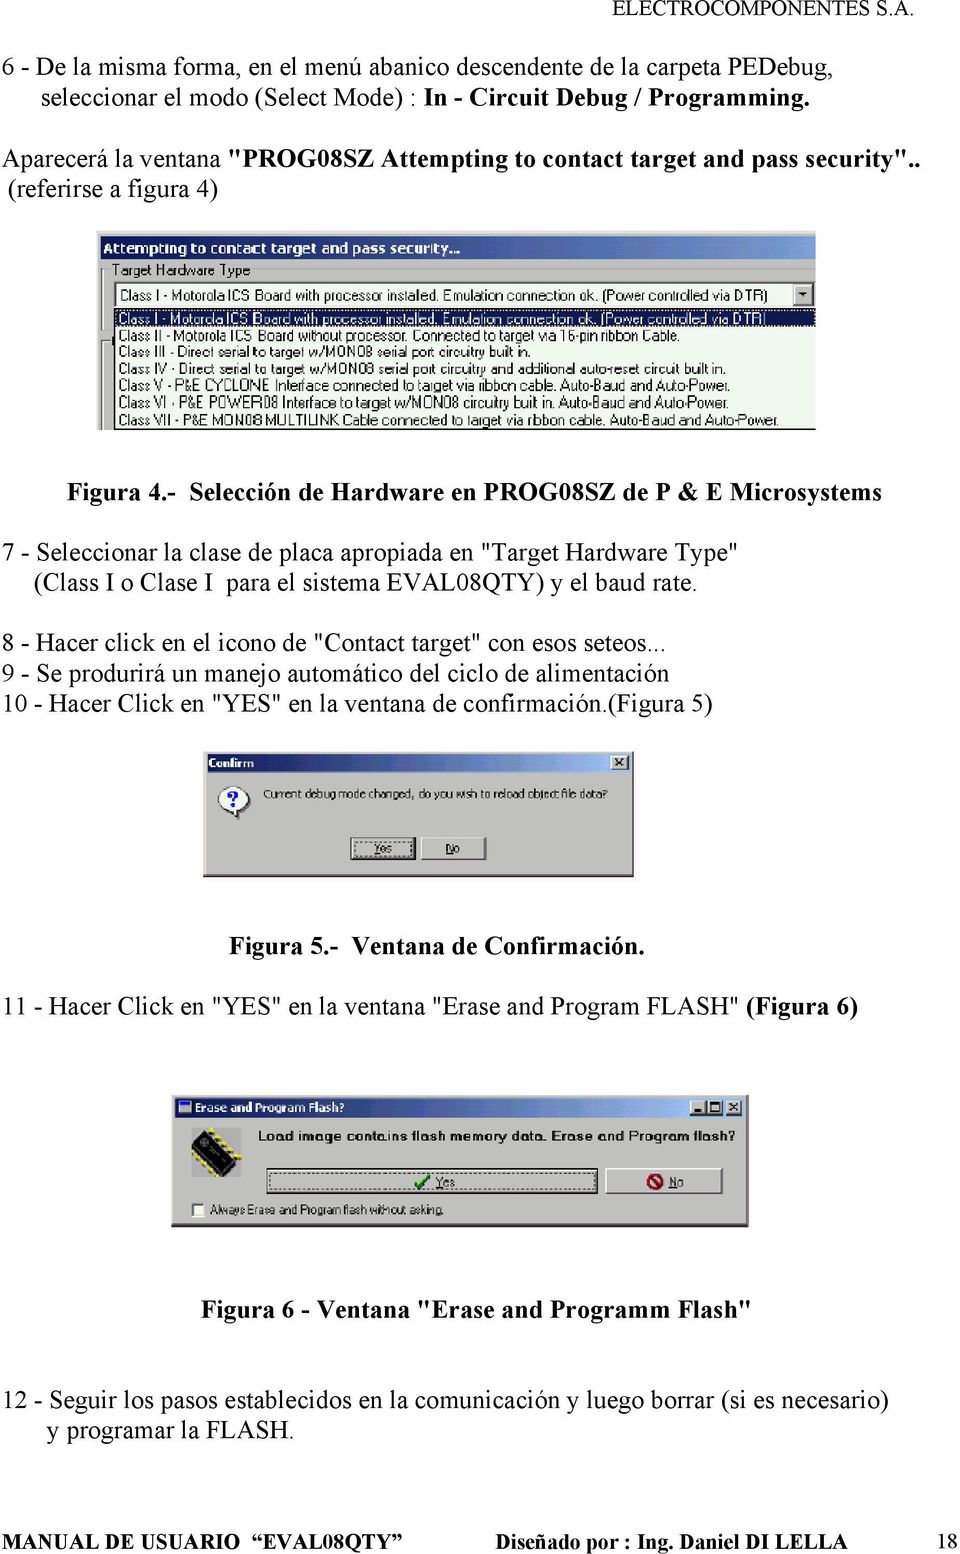 - Selección de Hardware en PROG08SZ de P & E Microsystems 7 - Seleccionar la clase de placa apropiada en "Target Hardware Type" (Class I o Clase I para el sistema EVAL08QTY) y el baud rate.